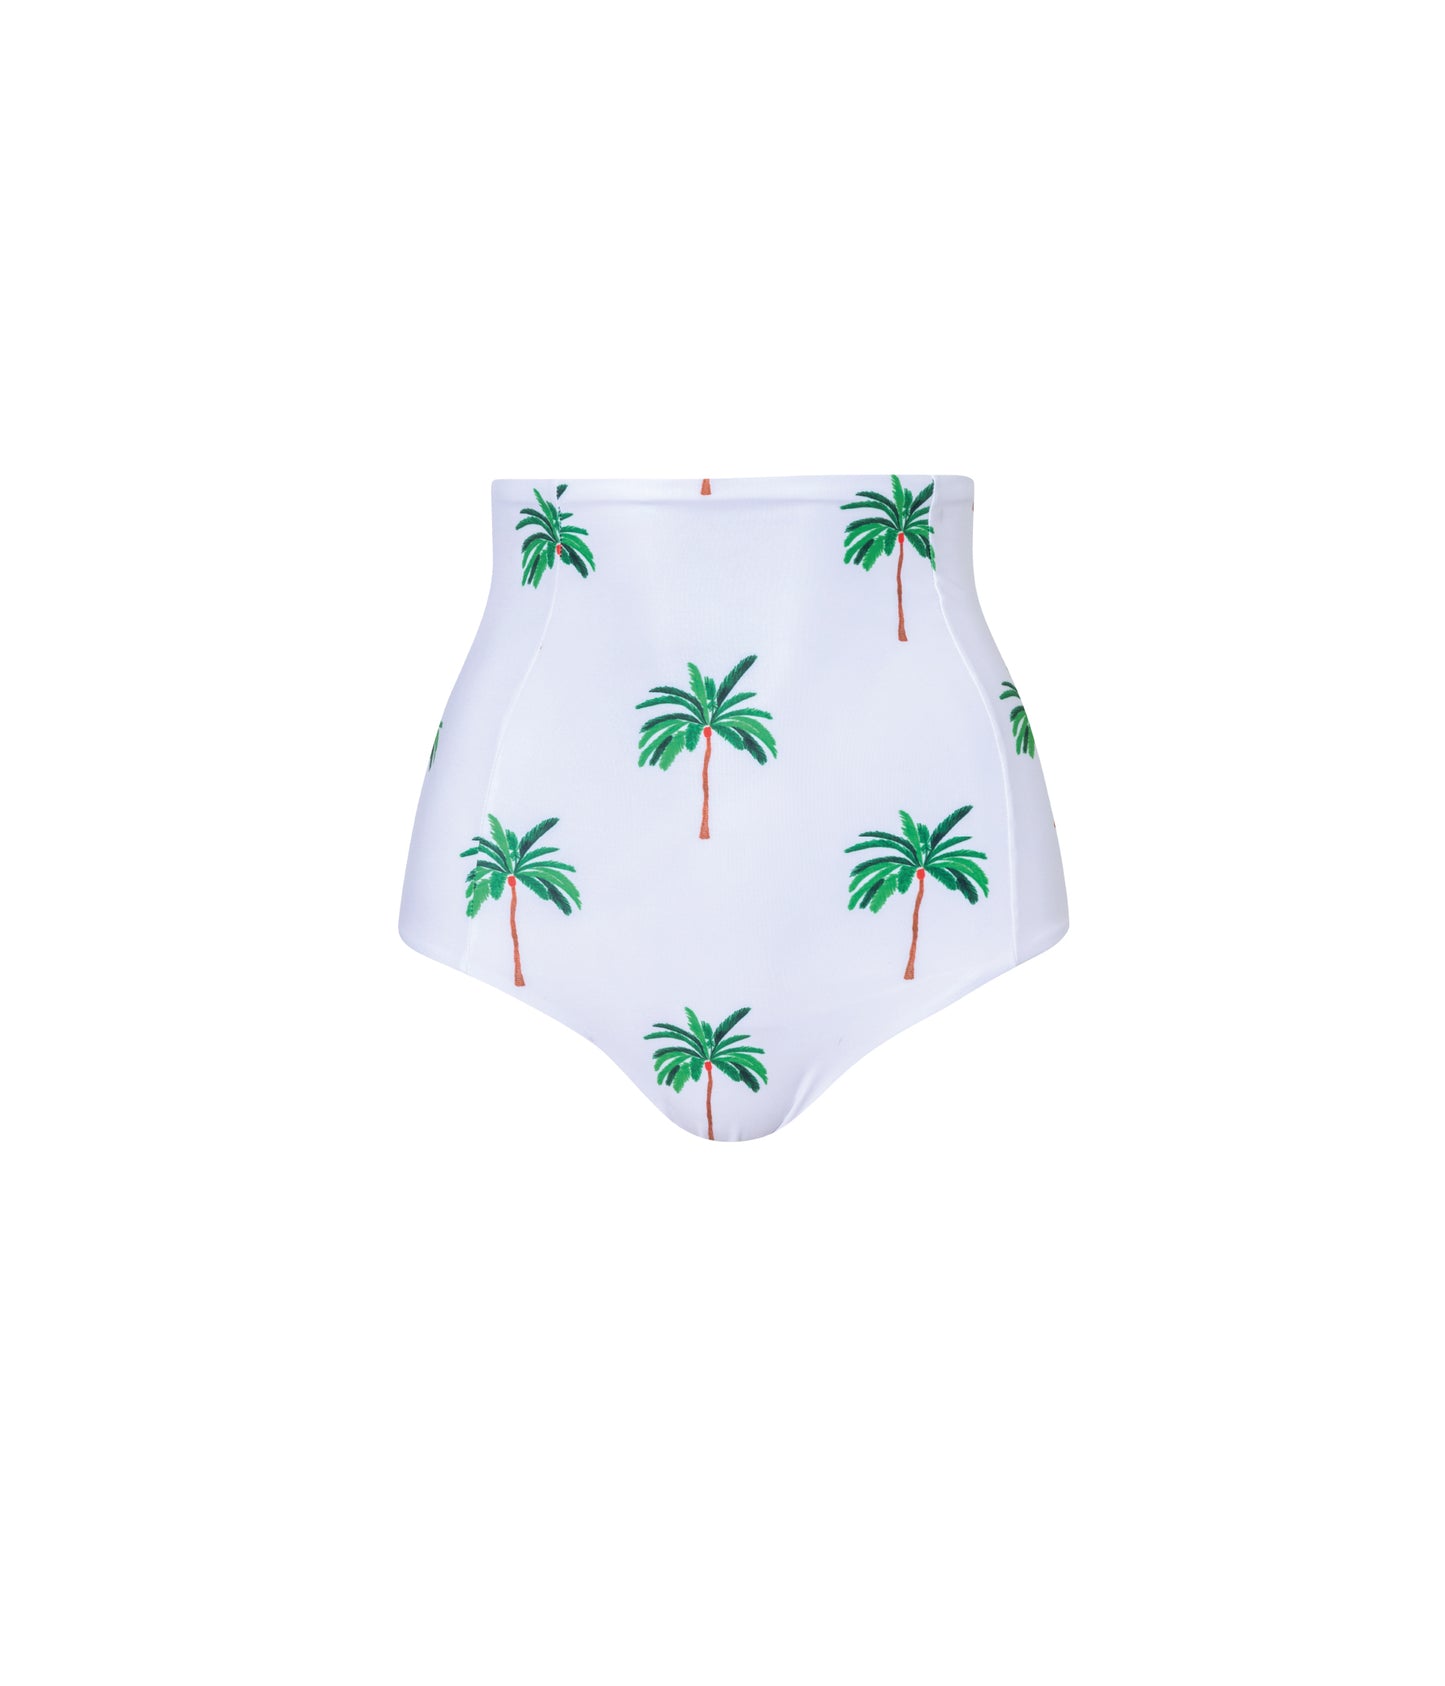 Verdelimon - Bikini Bottom -  Tottori - Printed - White Palmeras - Front 